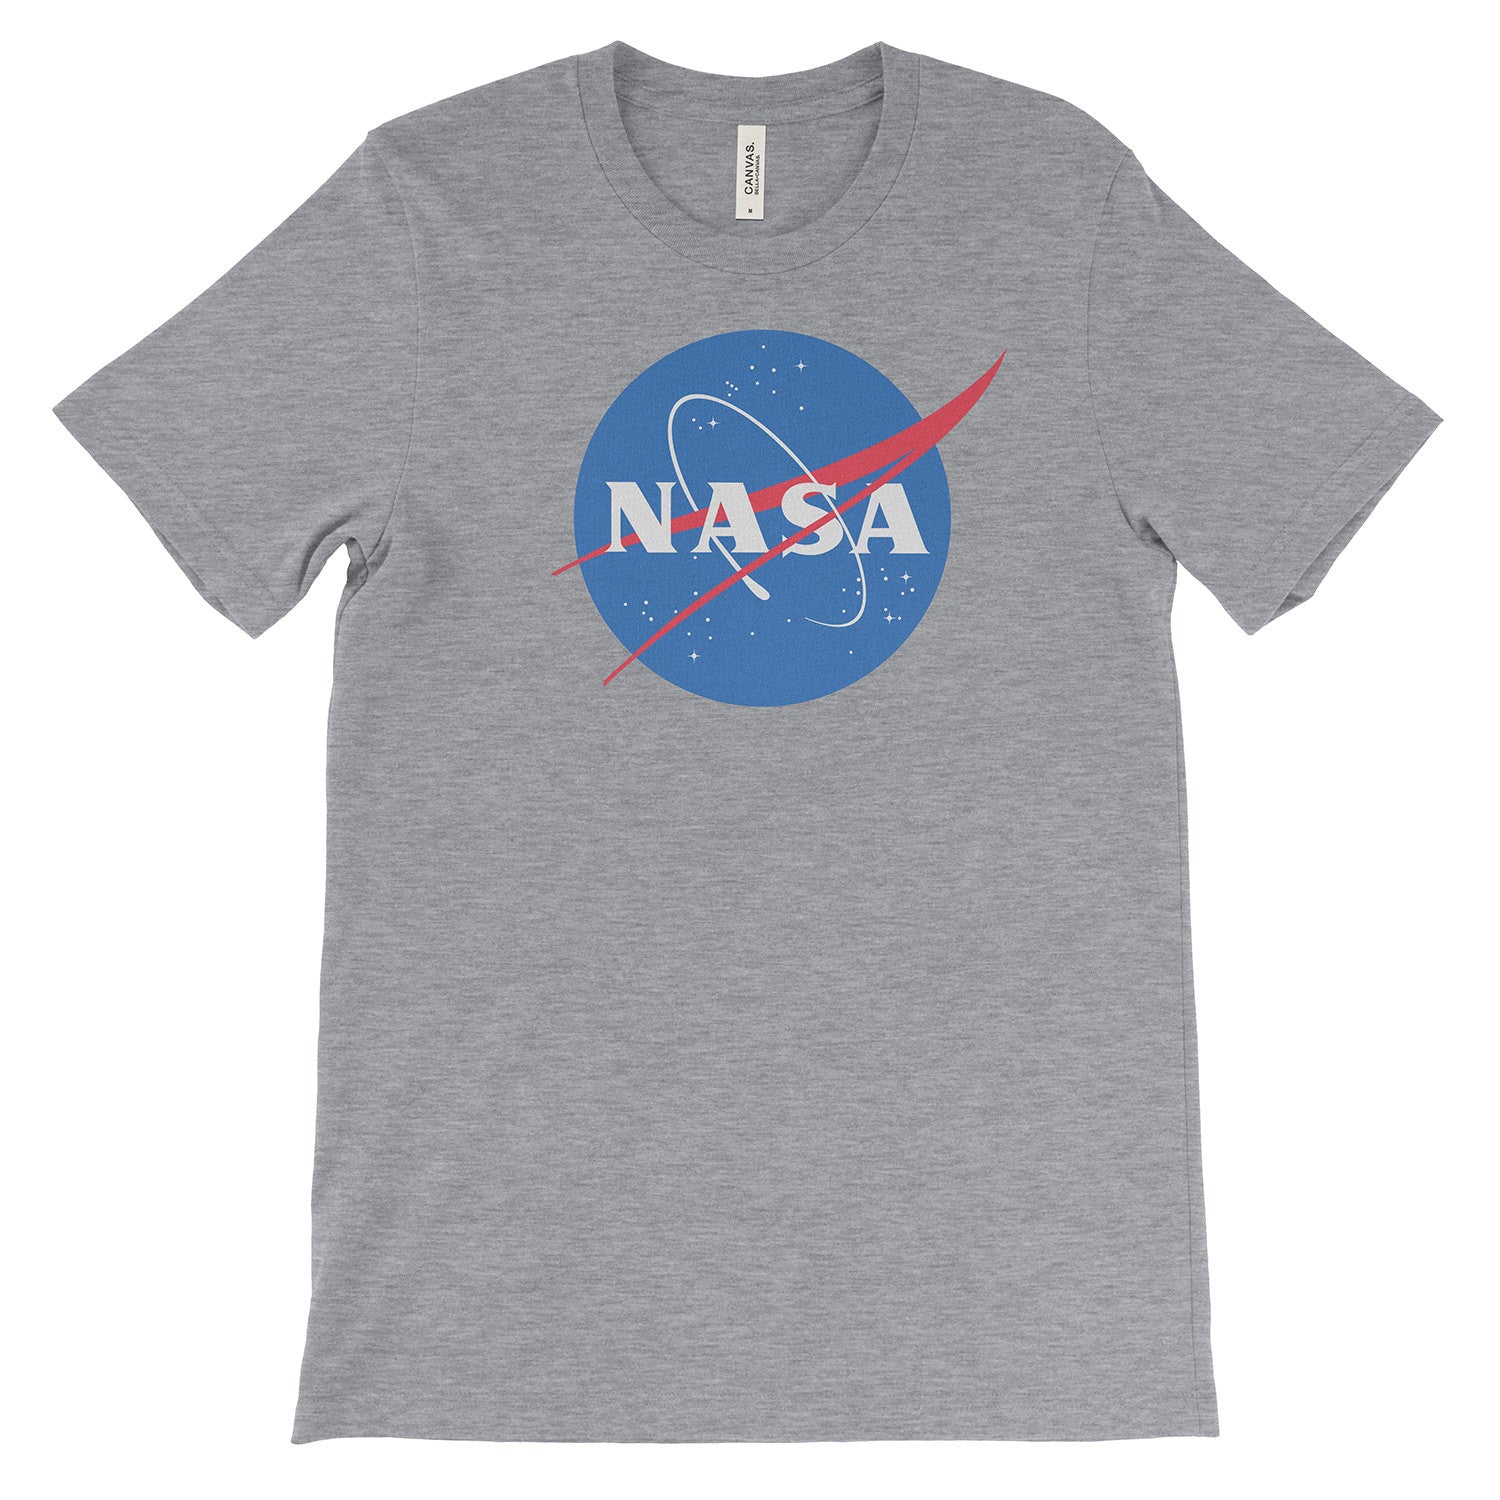 NASA t-shirt